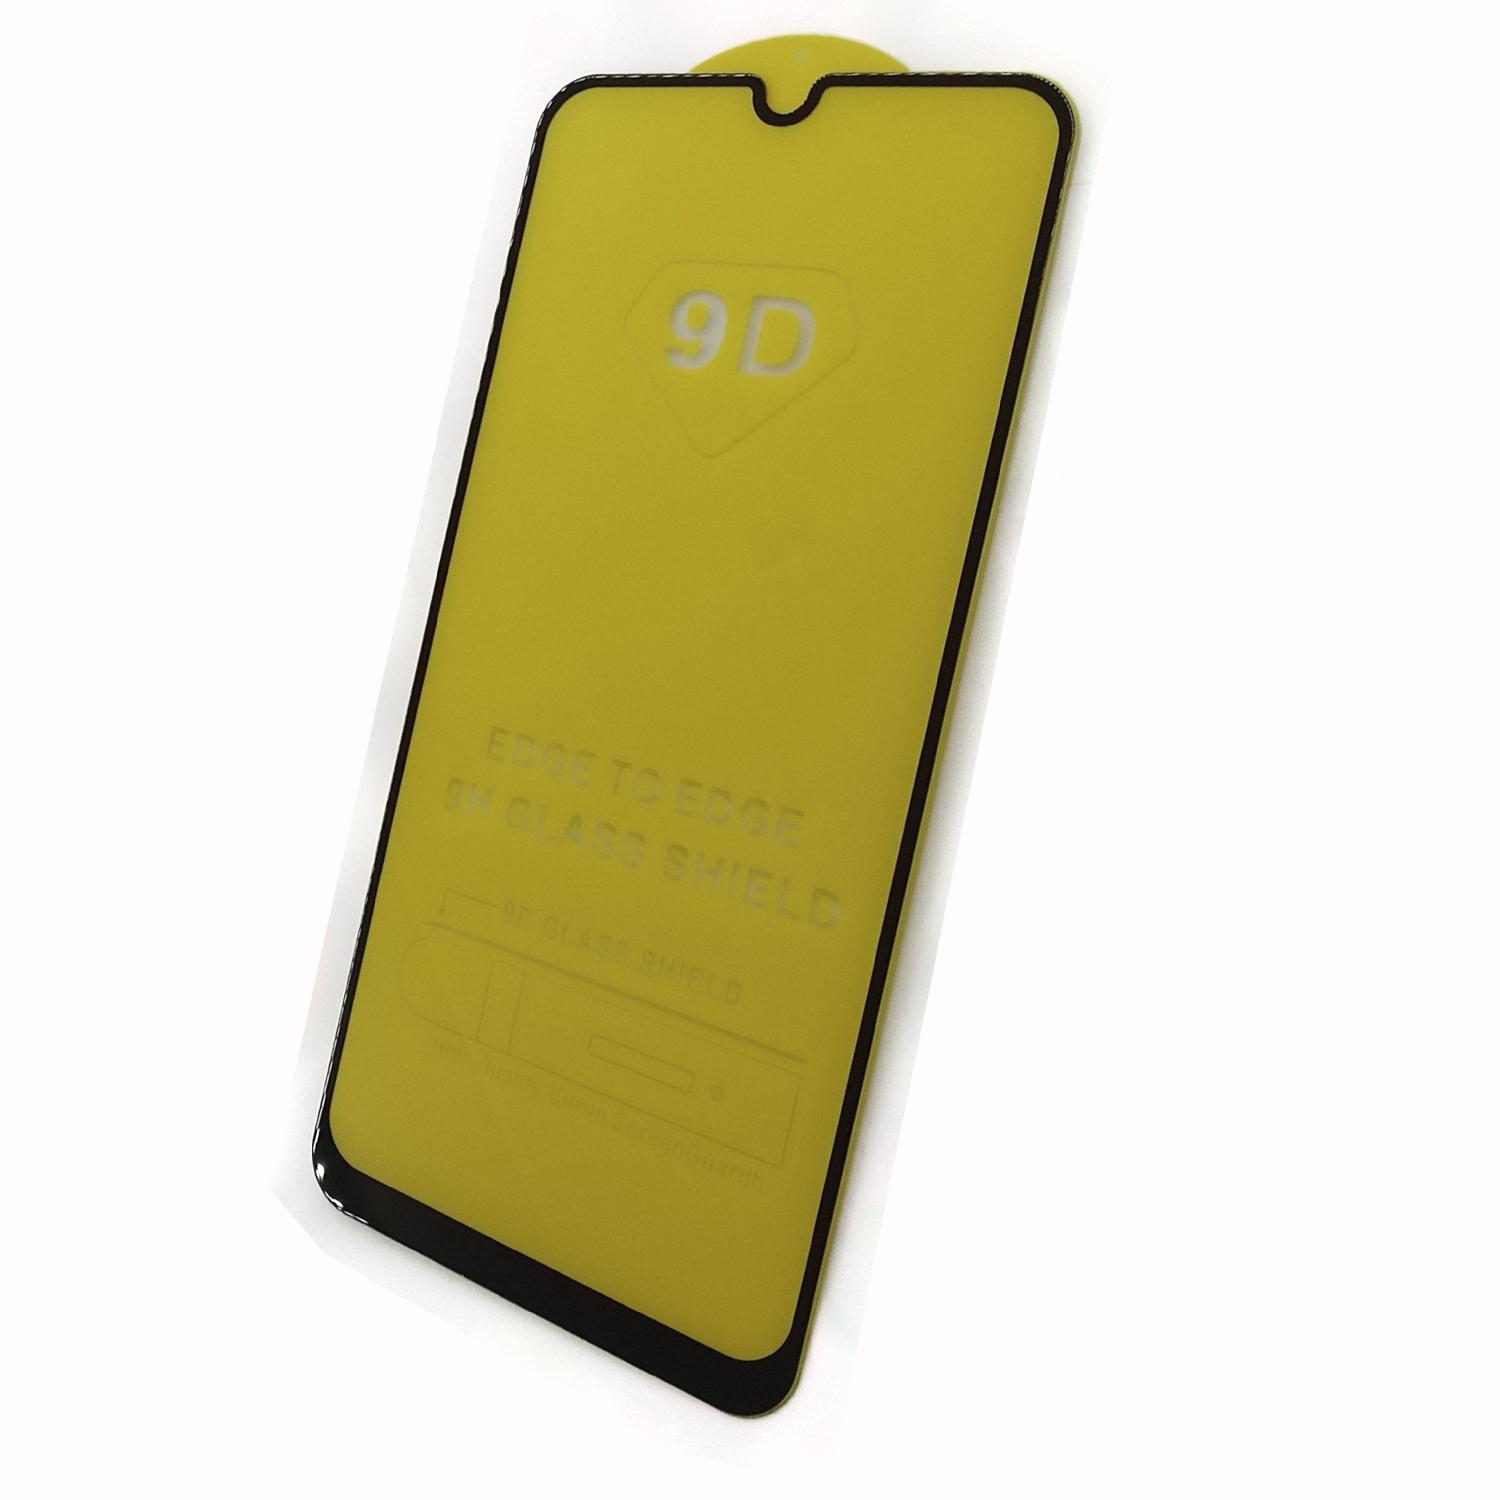 Защитное стекло телефона Samsung A205/A305/A307/A505/M305 Galaxy A20/A30/A30S/A50/M30 (2019) 5D